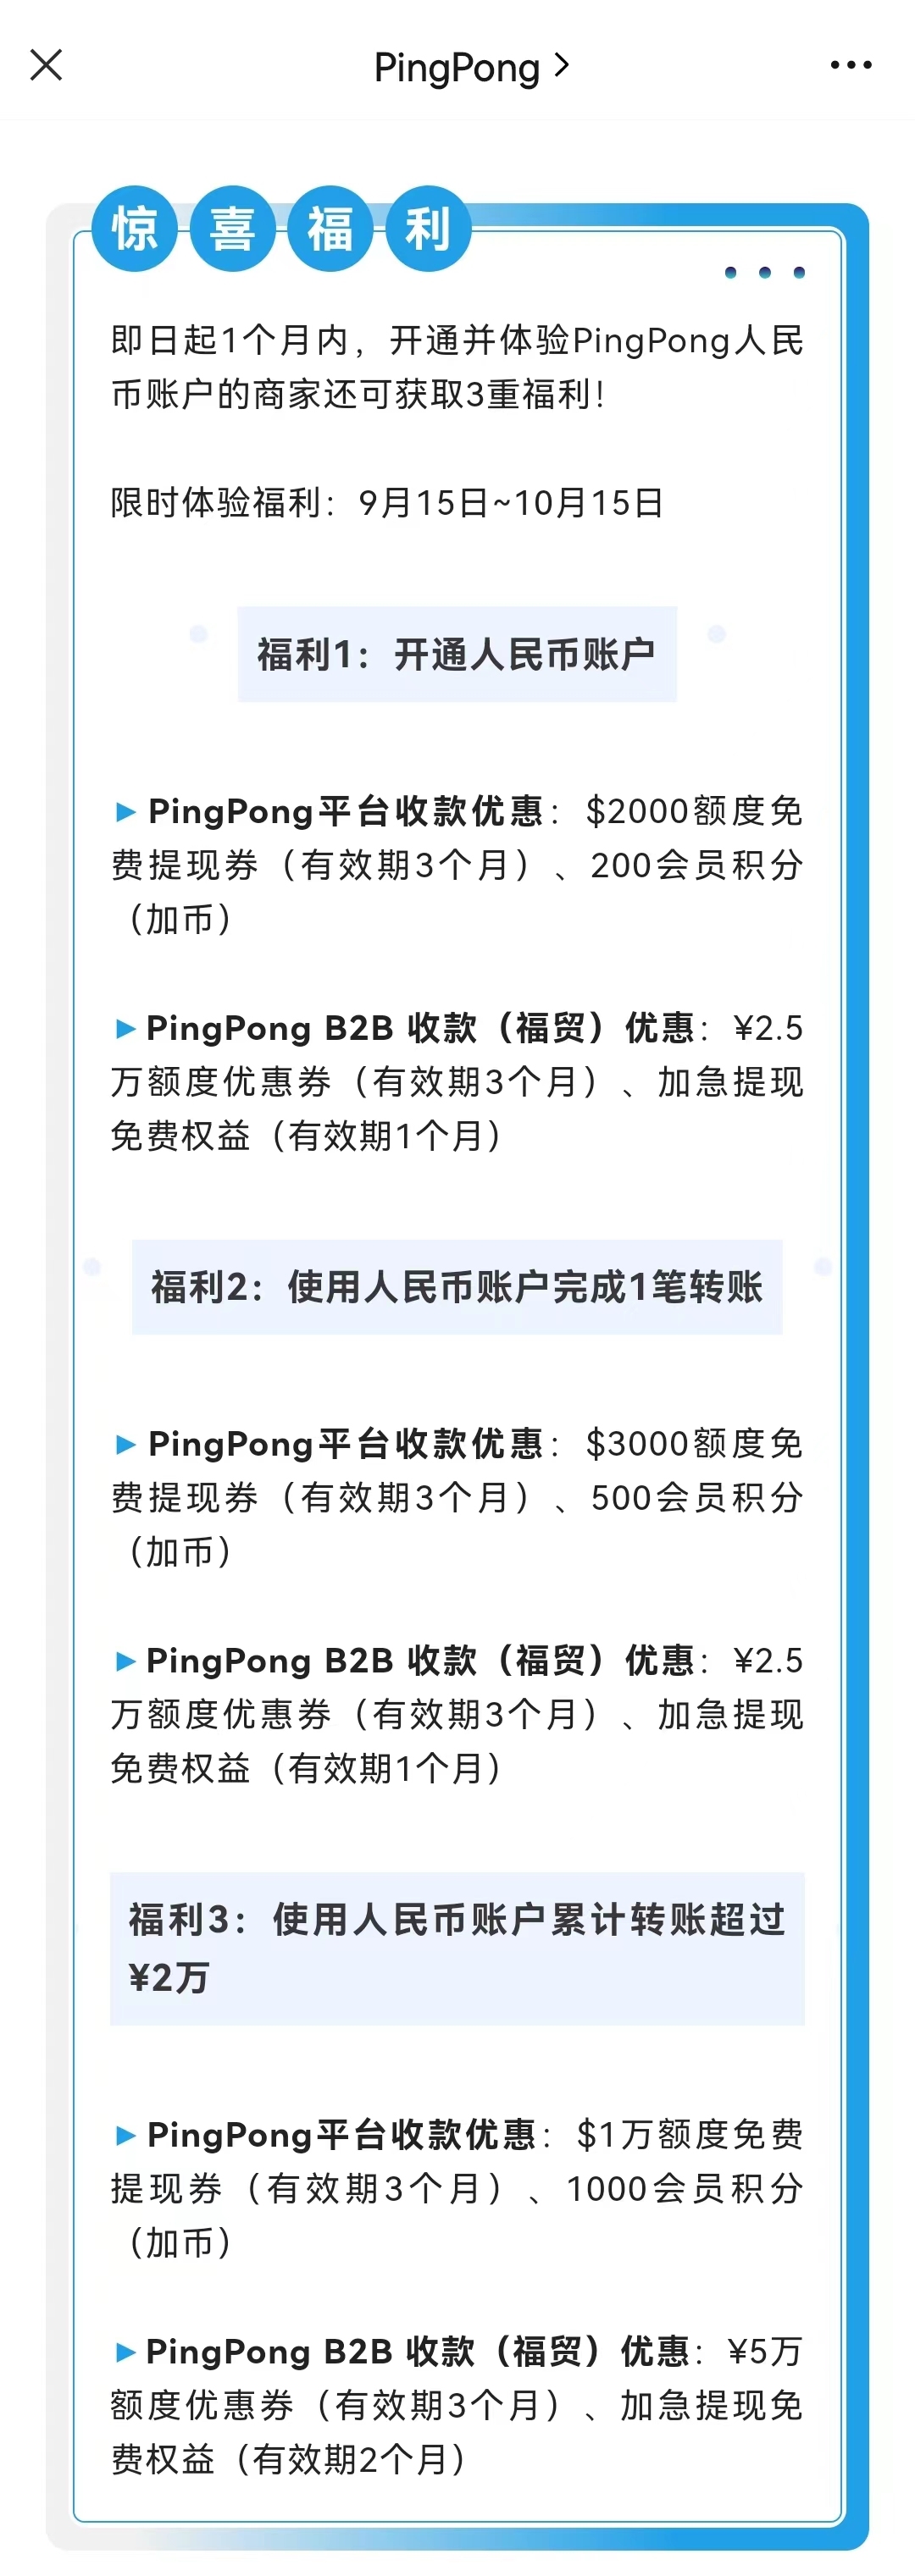 PingPong人民币账户已上线 0费用实时到账